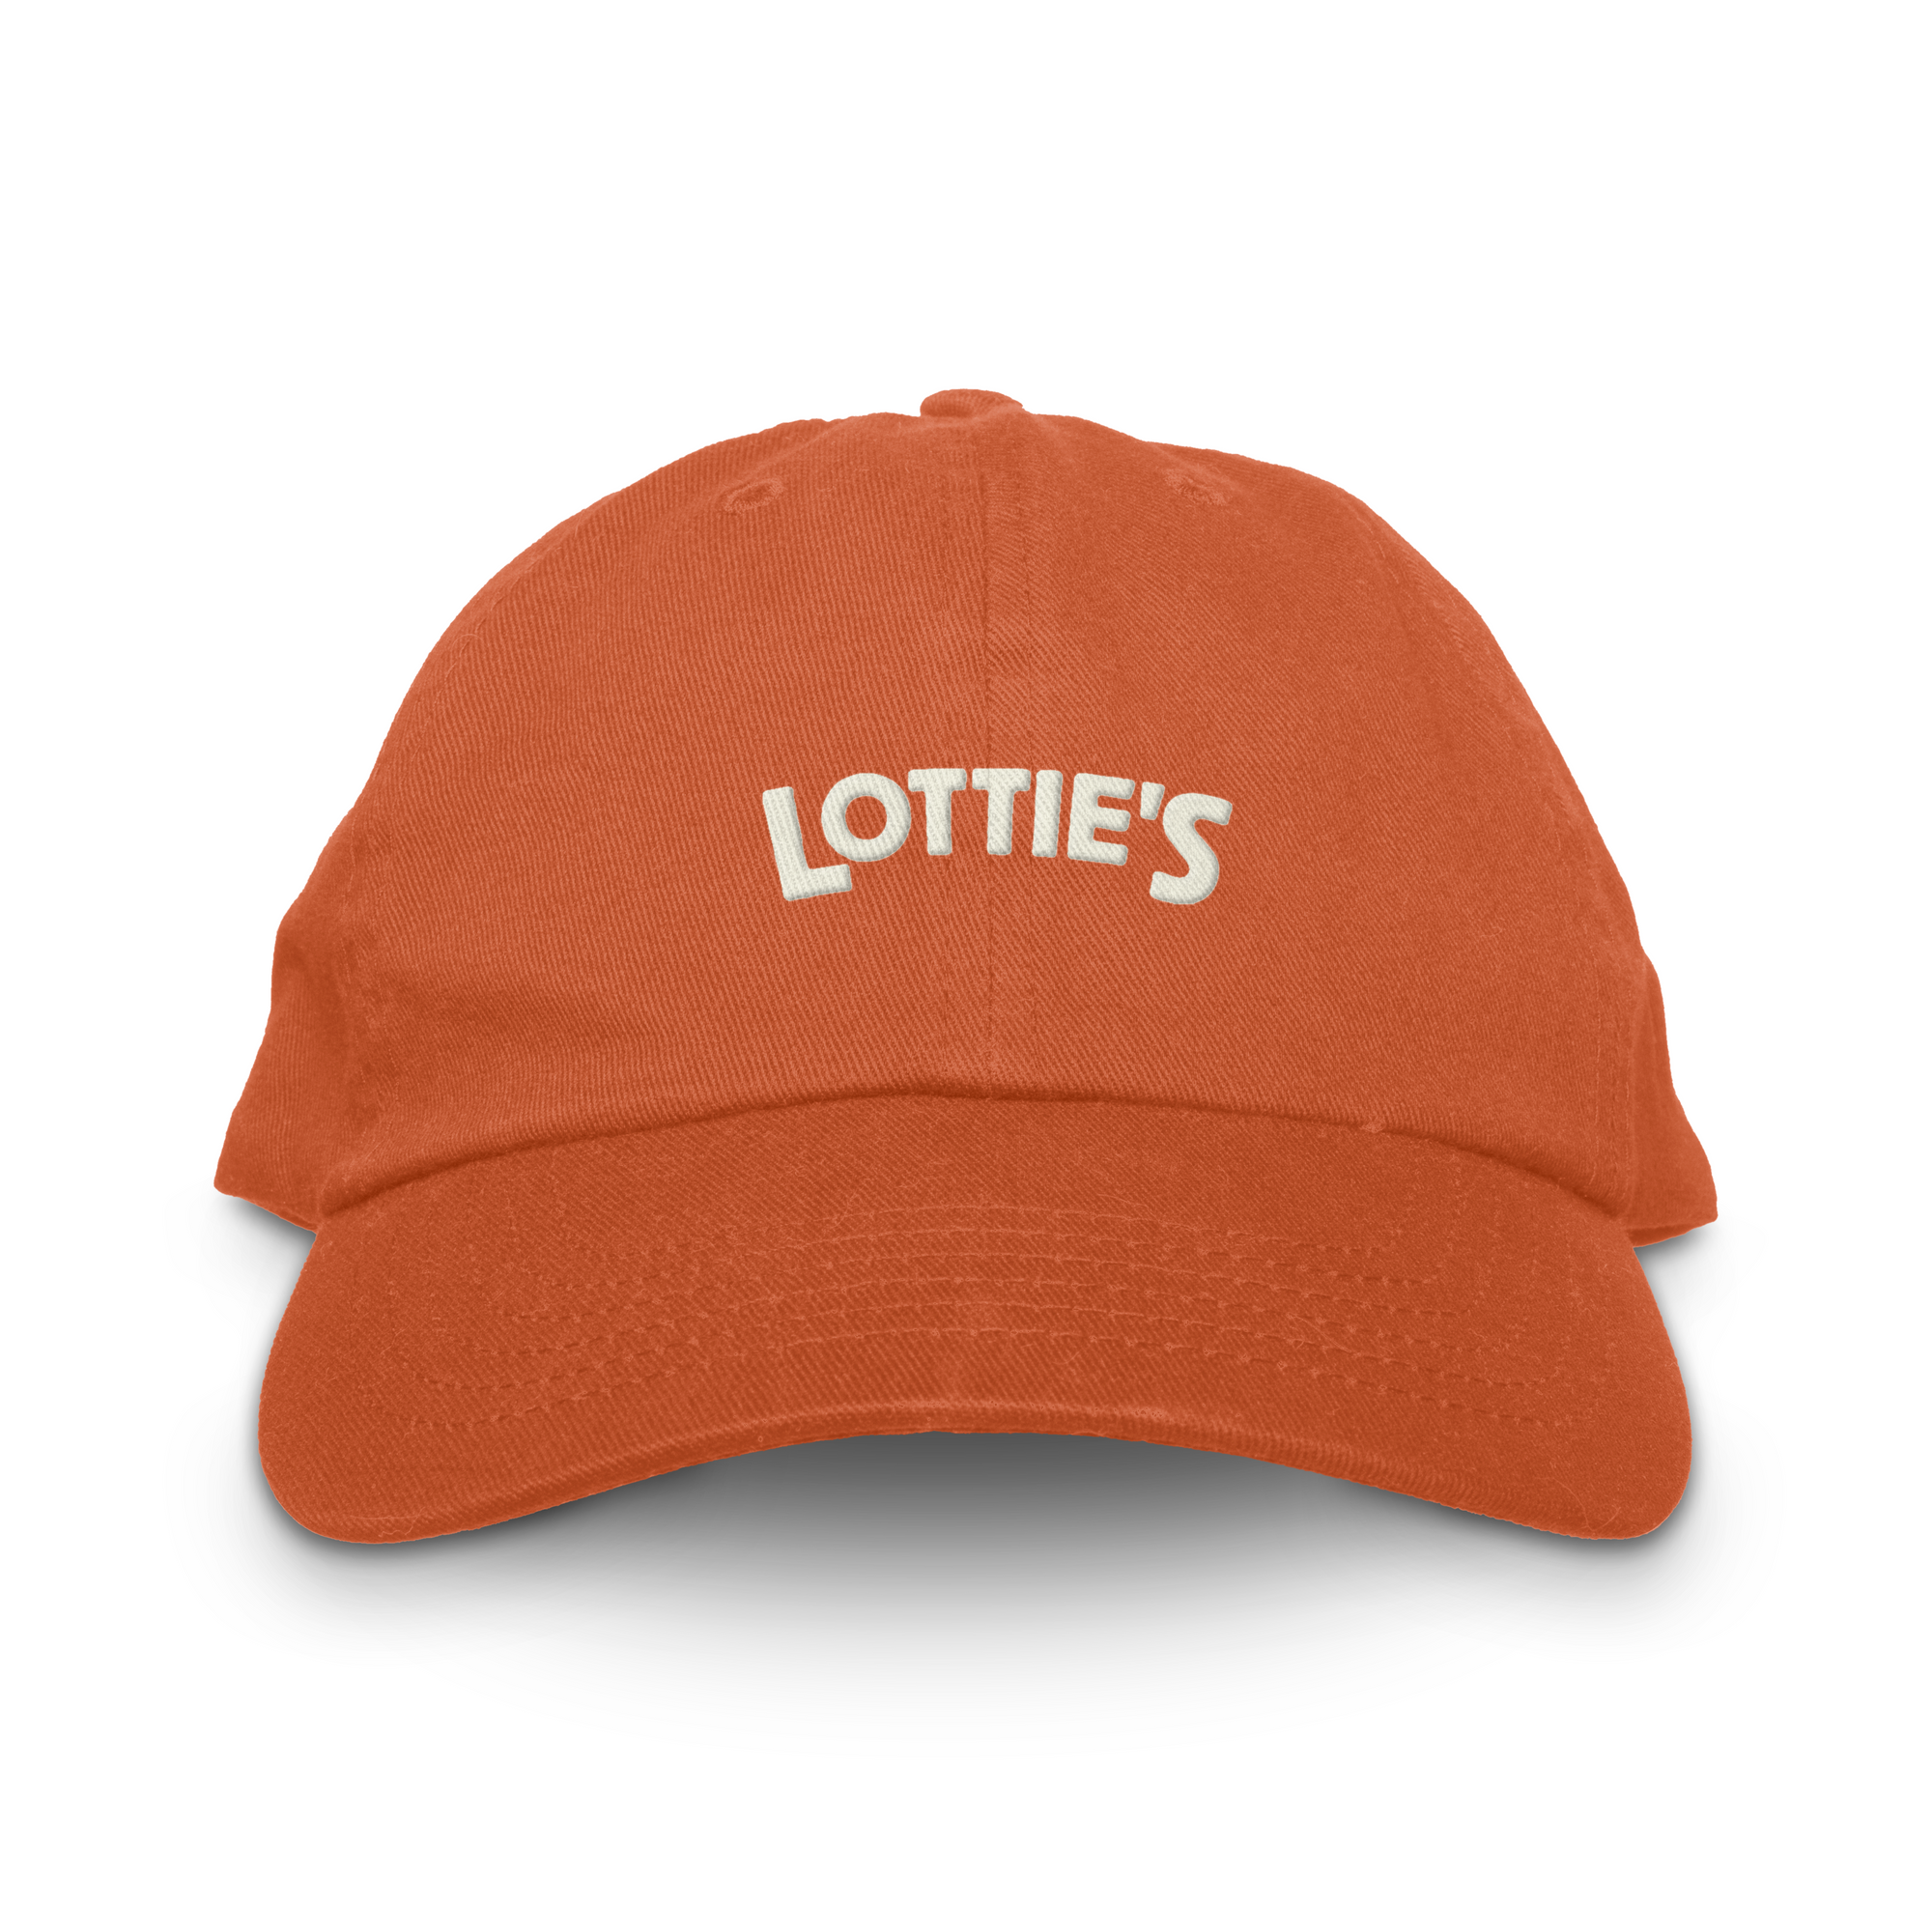 The Lottie's Cap